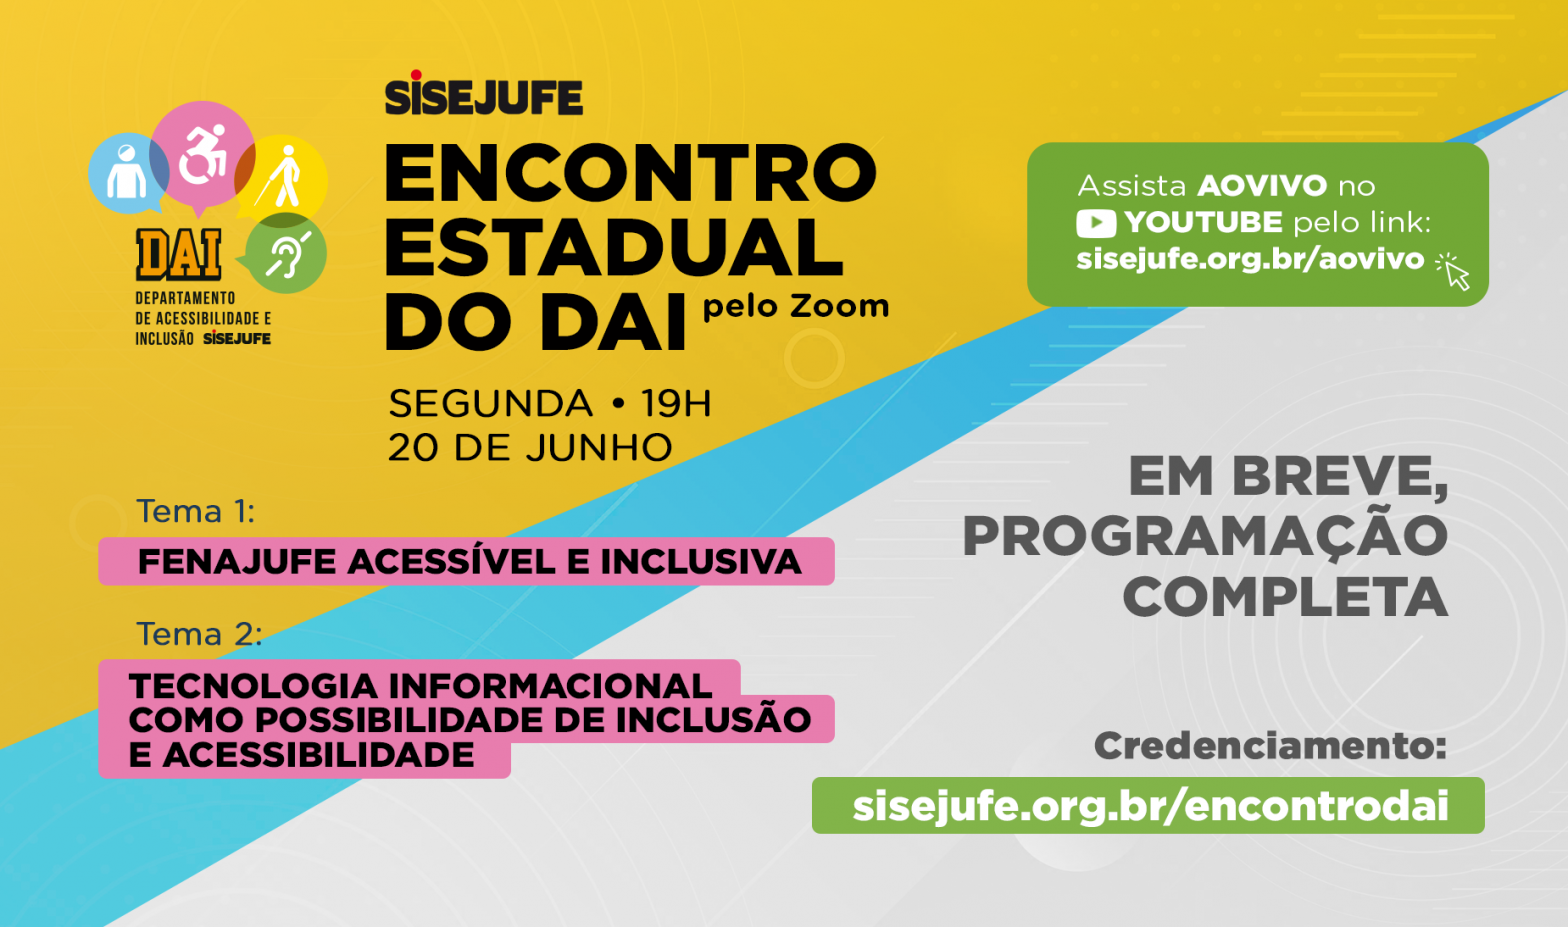 Sisejufe convida para Encontro Estadual de Acessibilidade e Inclusão, na próxima segunda-feira (20/6), às 19h, SISEJUFE